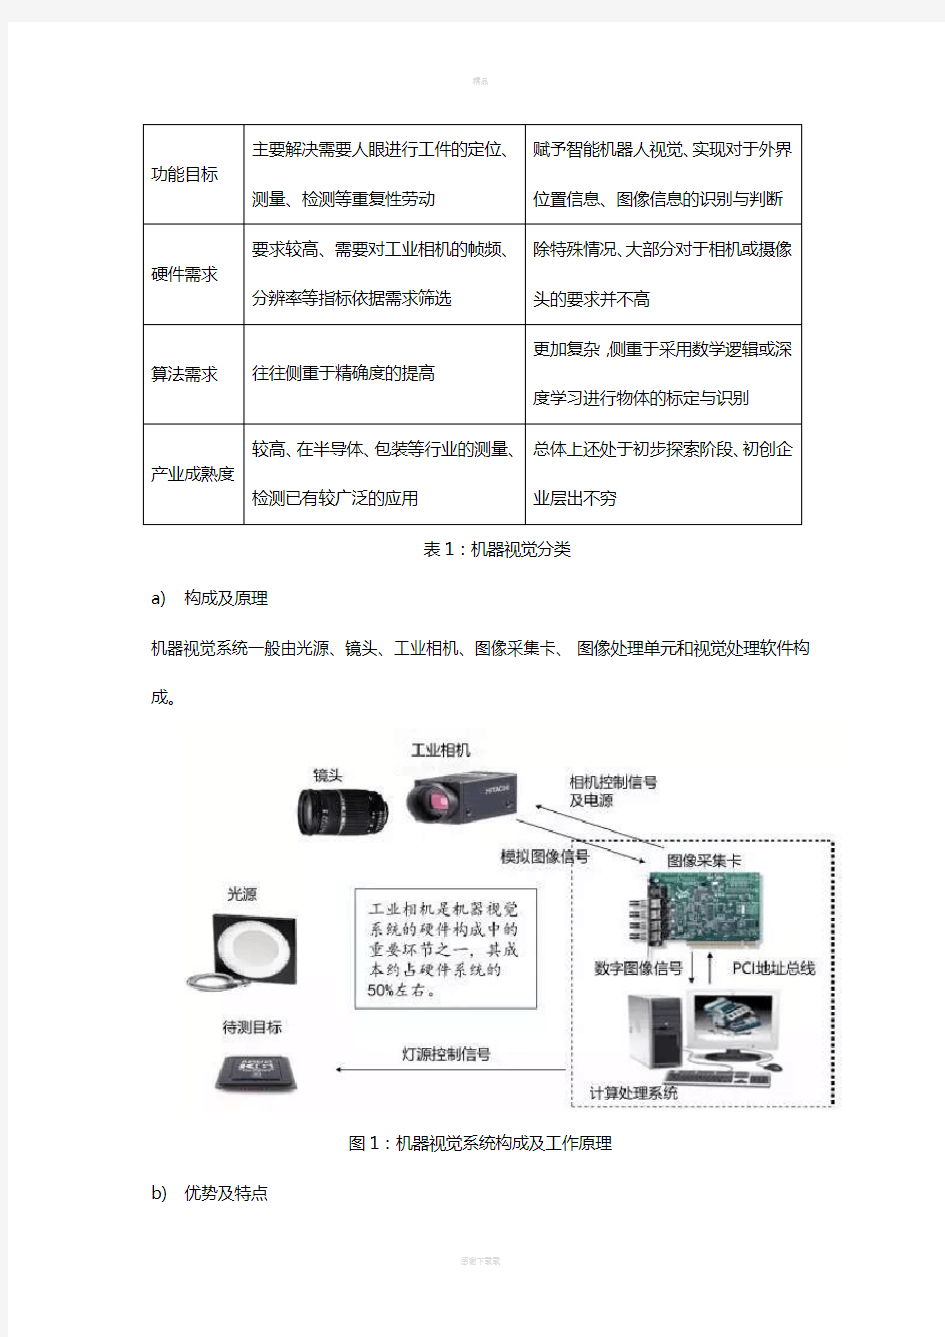 机器视觉技术的在不同行业的应用-上海映初